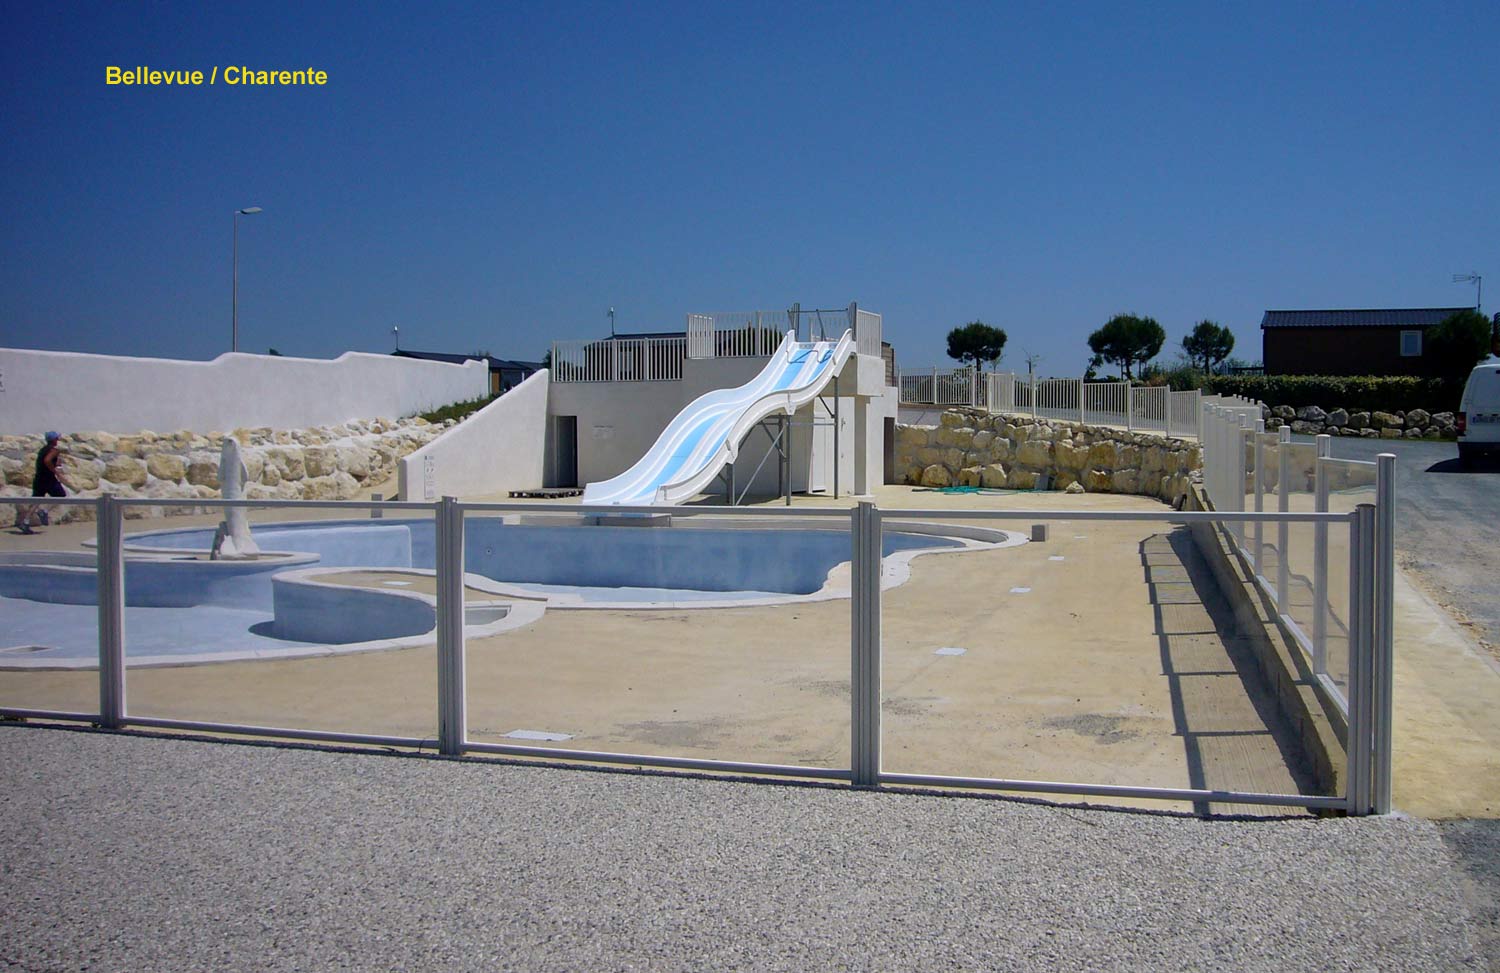 barrière de piscine en verre et barreaux dans le camping - Bellevue en Charente - clôturant un superbe équipement paysagé avec plusieurs bassins de piscine